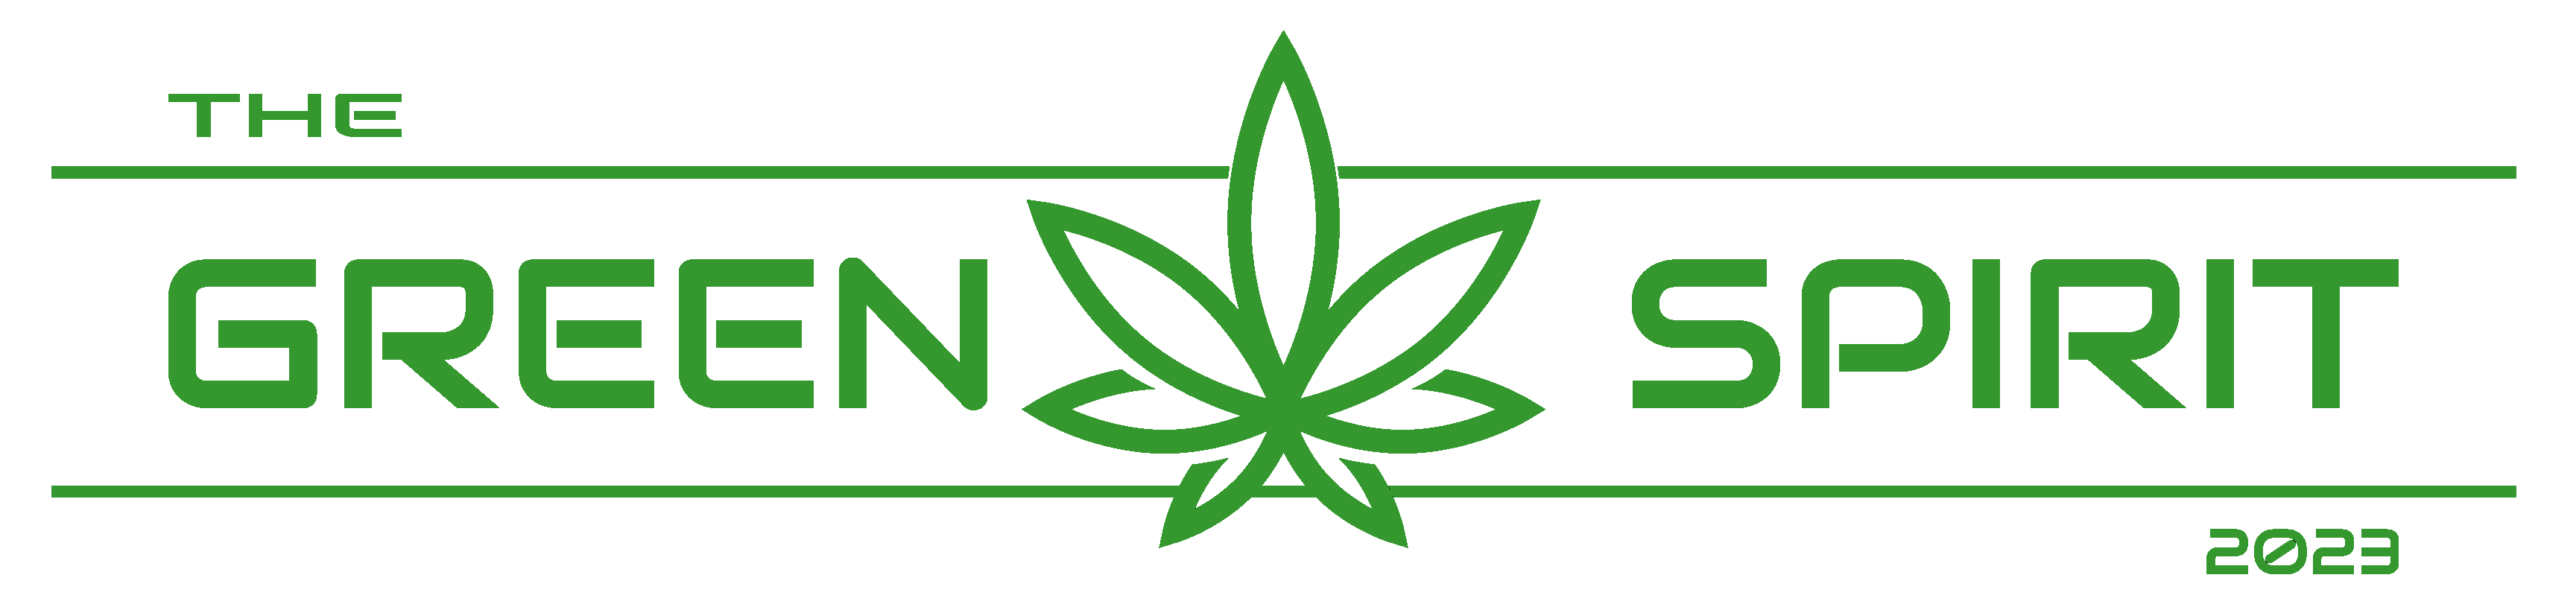 Das Logo von The Green Spirit in grün